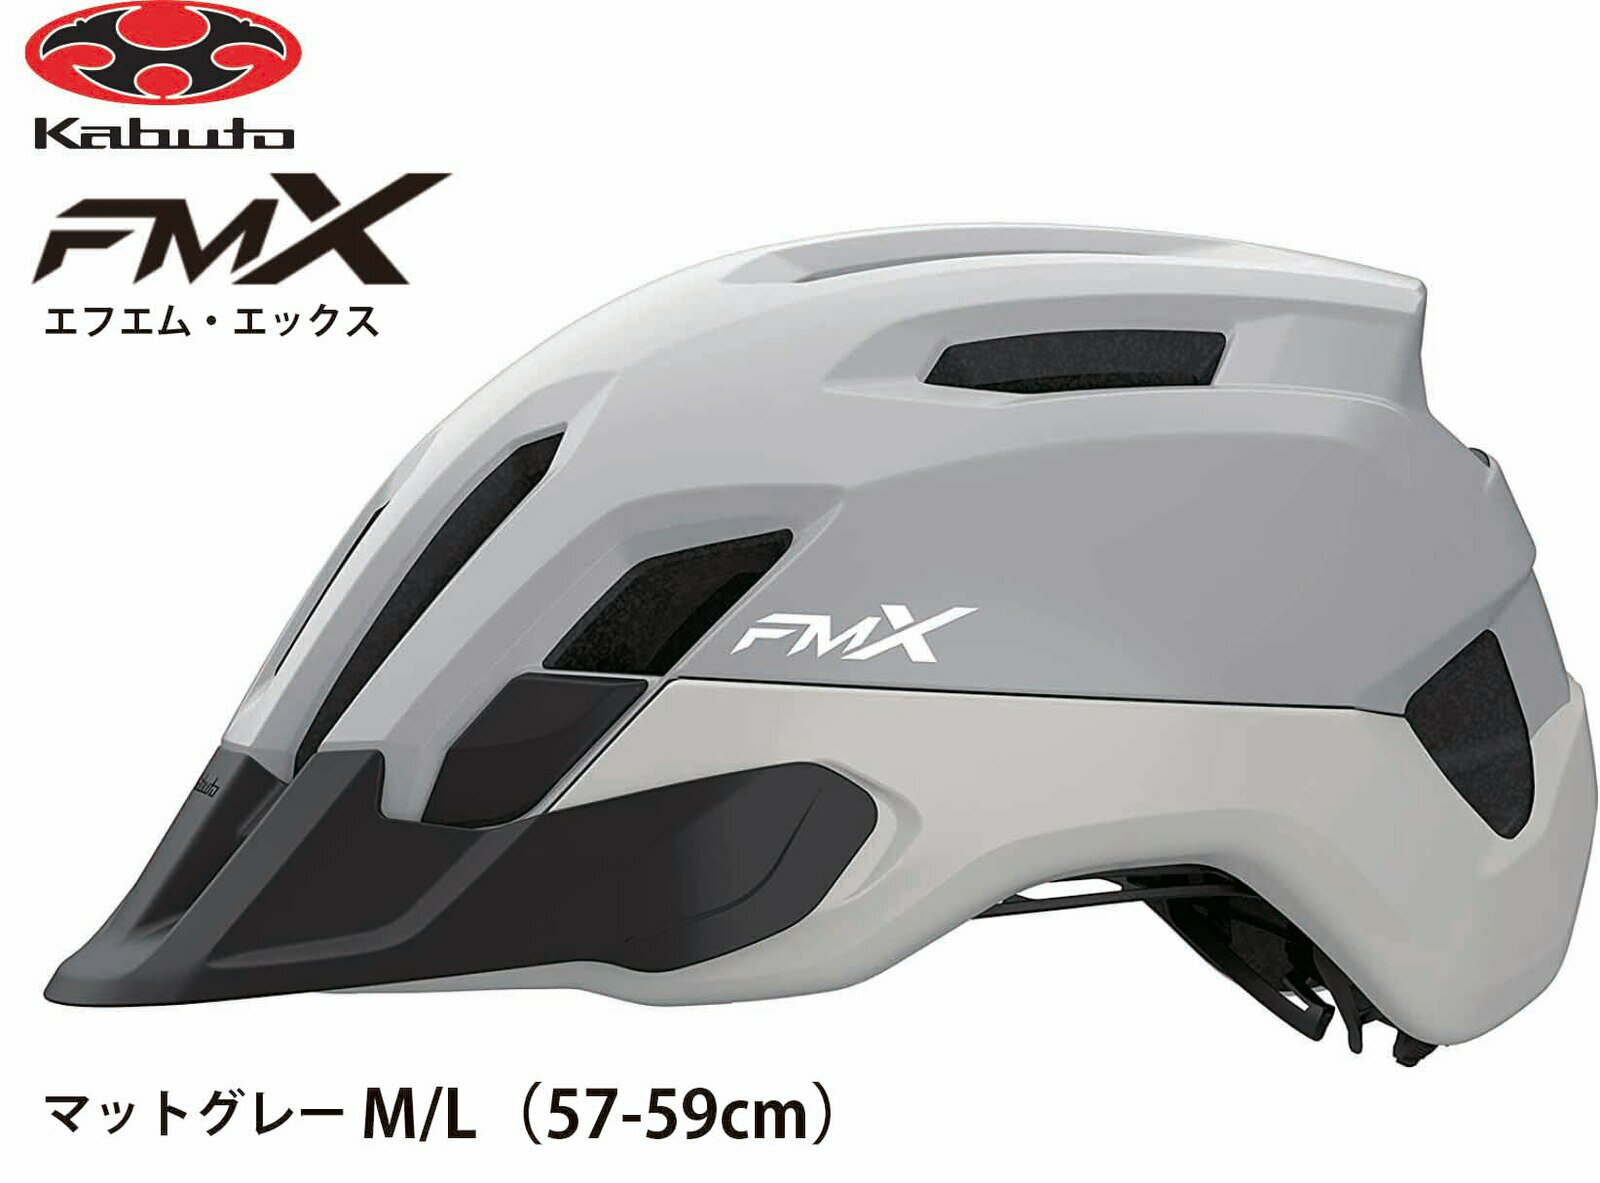 OGK KABUTO オージーケー カブト FM-X エフエム エックス フロント可変式バイザー付 インナーパッド装備 大人用サイクルヘルメット 自転車用ヘルメット M / L サイズ 57~59cm マットグレー